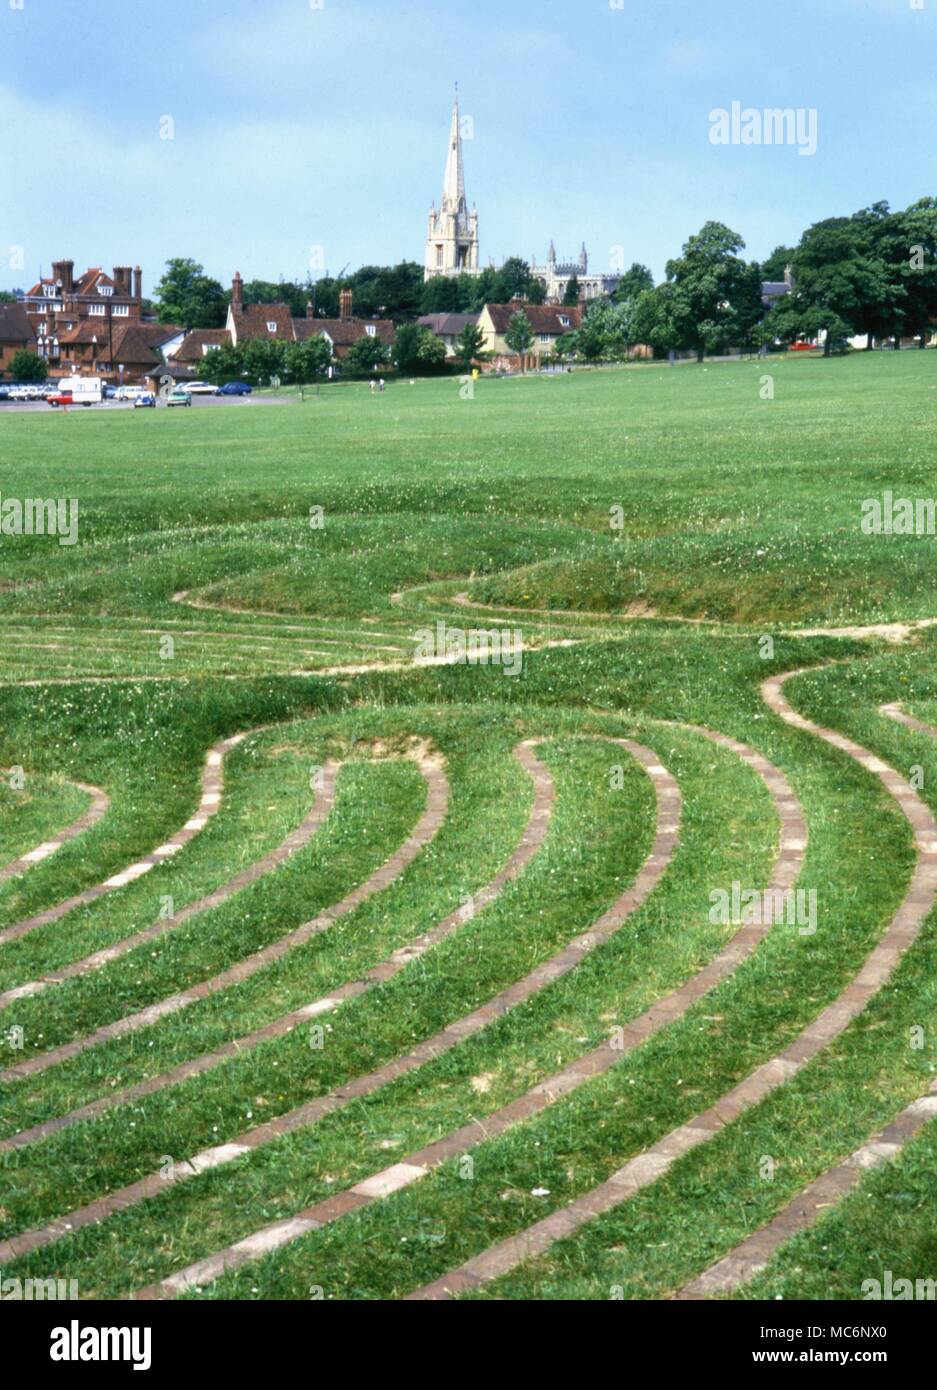 Labirinti - Saffron Walden Turf labirinto sulla comune di Saffron Walden, ha detto di essere il più grande labirinto in Gran Bretagna. Si tratta di 115 metri di diametro e il percorso è quasi un miglio di lunghezza. Data sconosciuta, ma i record per il mantenimento risalgono al XVII secolo . Foto Stock